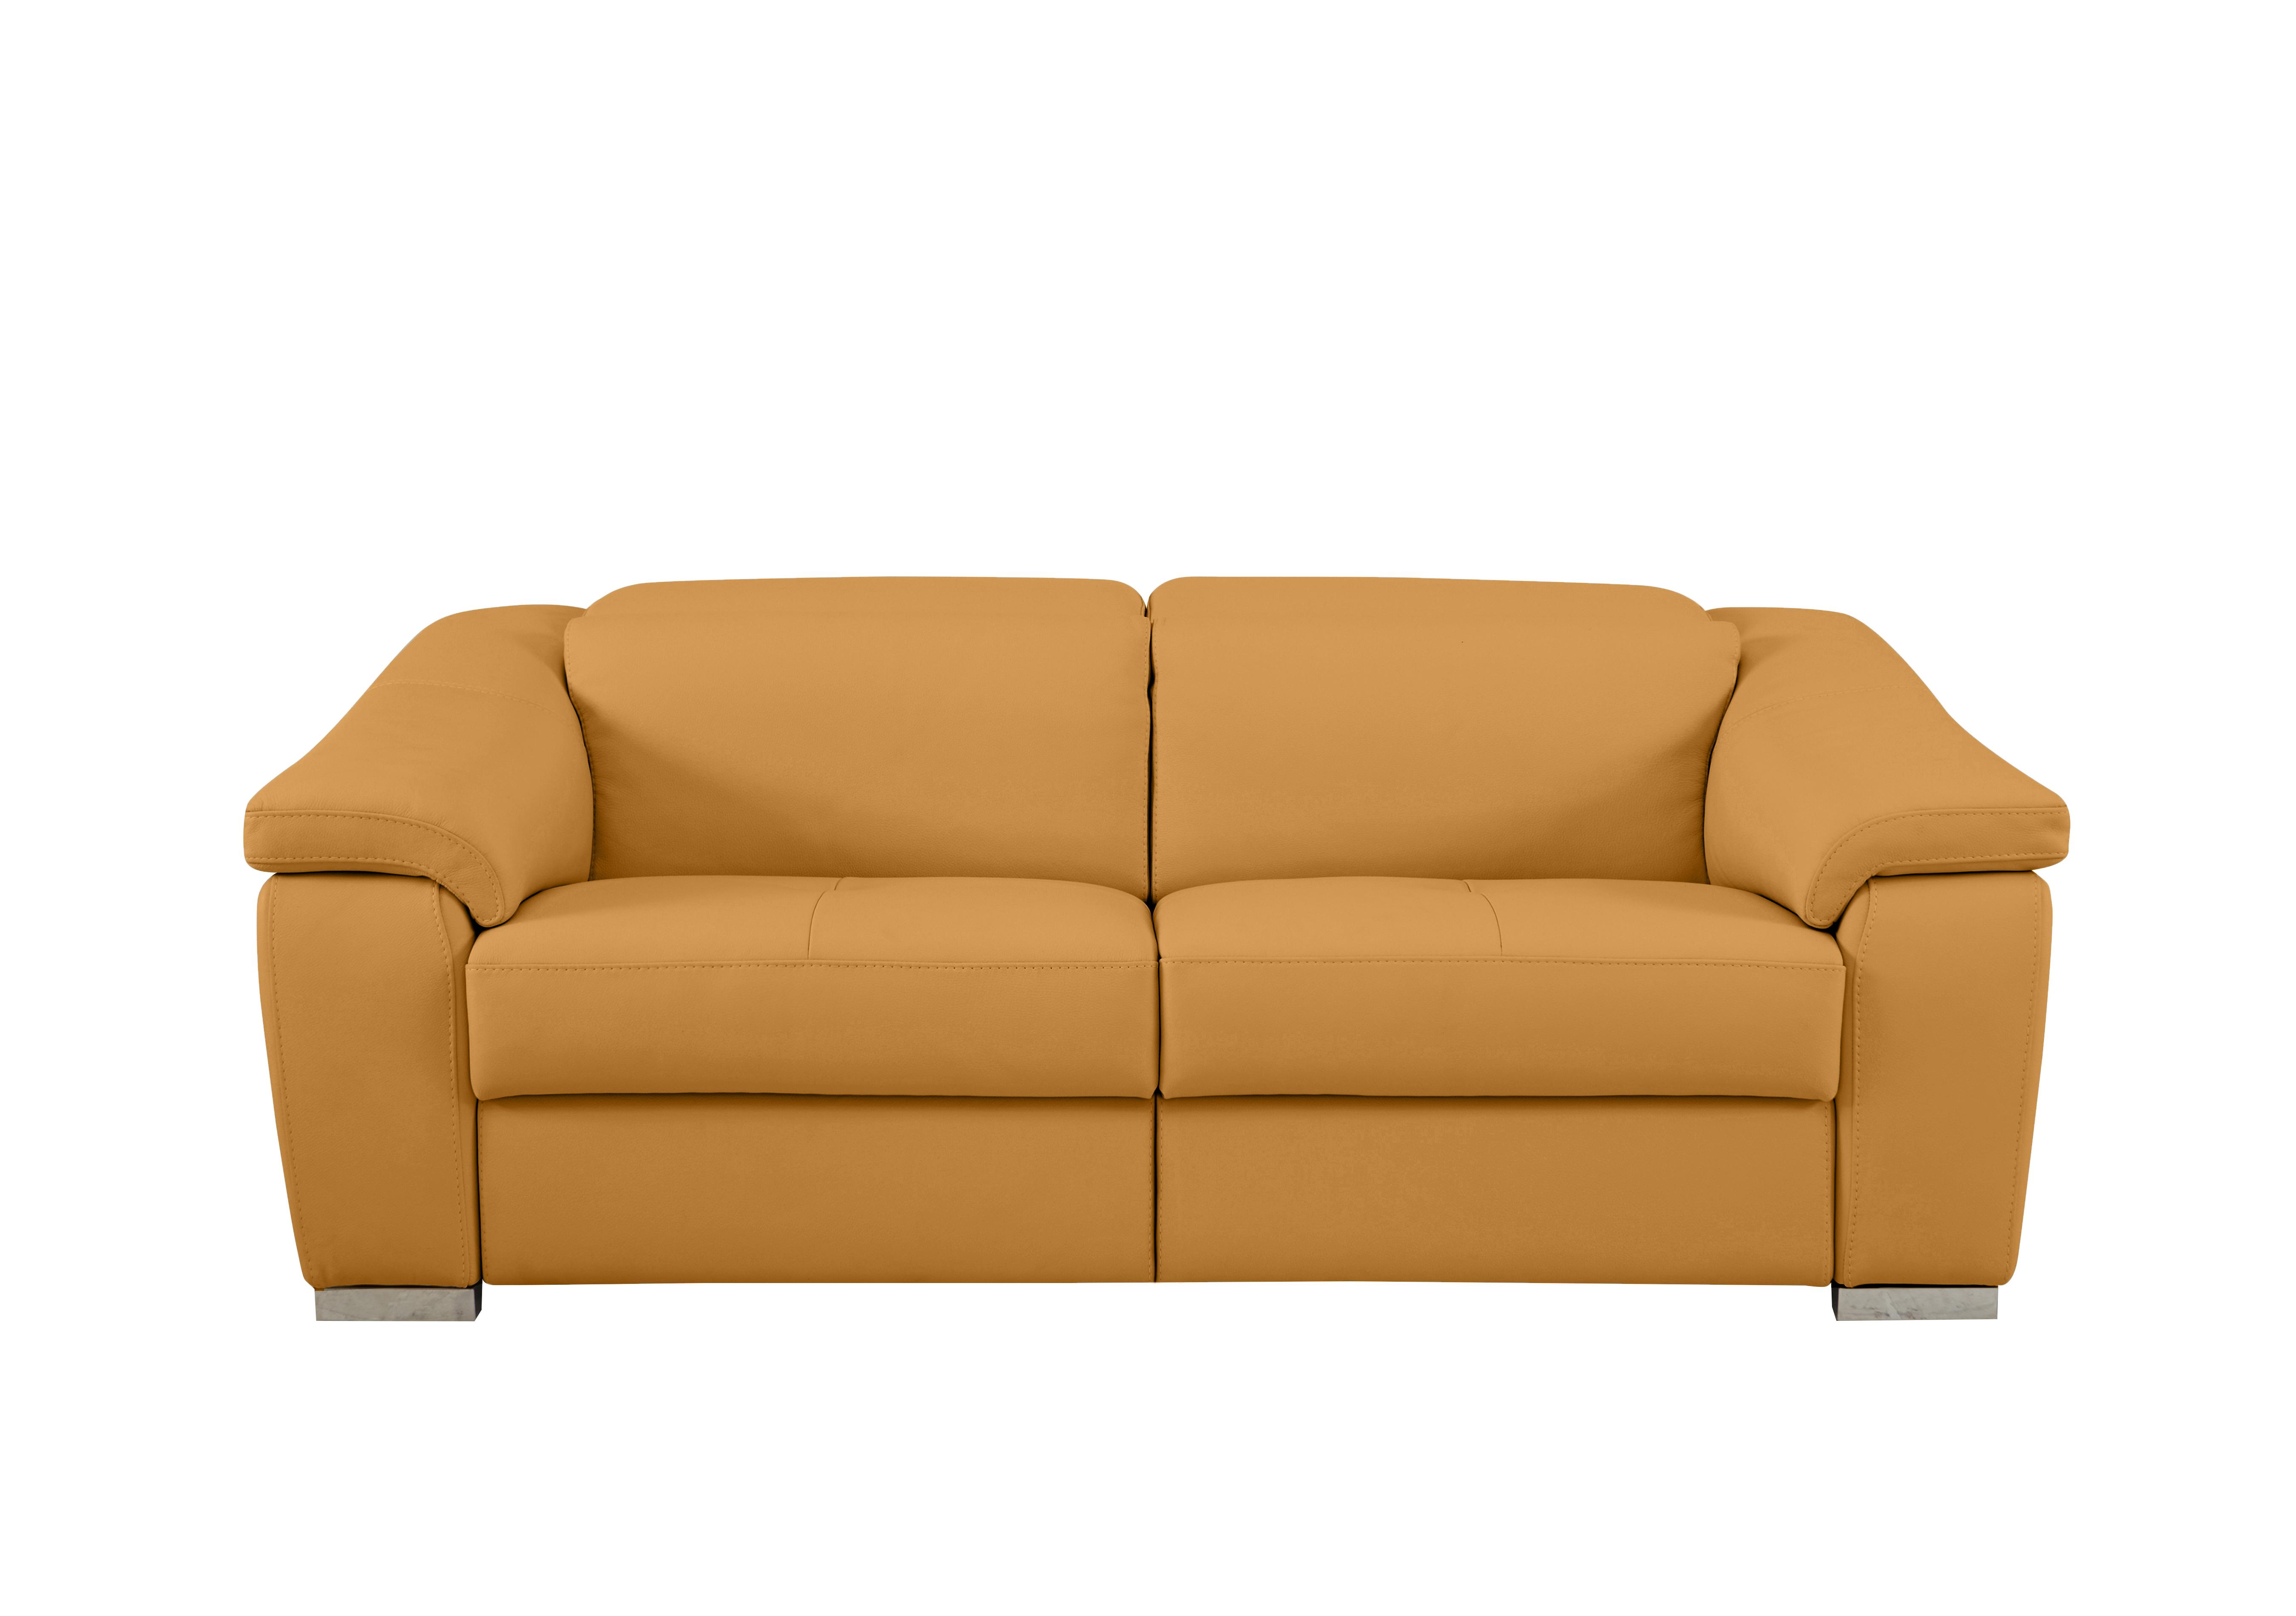 Galileo 3 Seater Leather Sofa in Torello Senape 355 Ch on Furniture Village